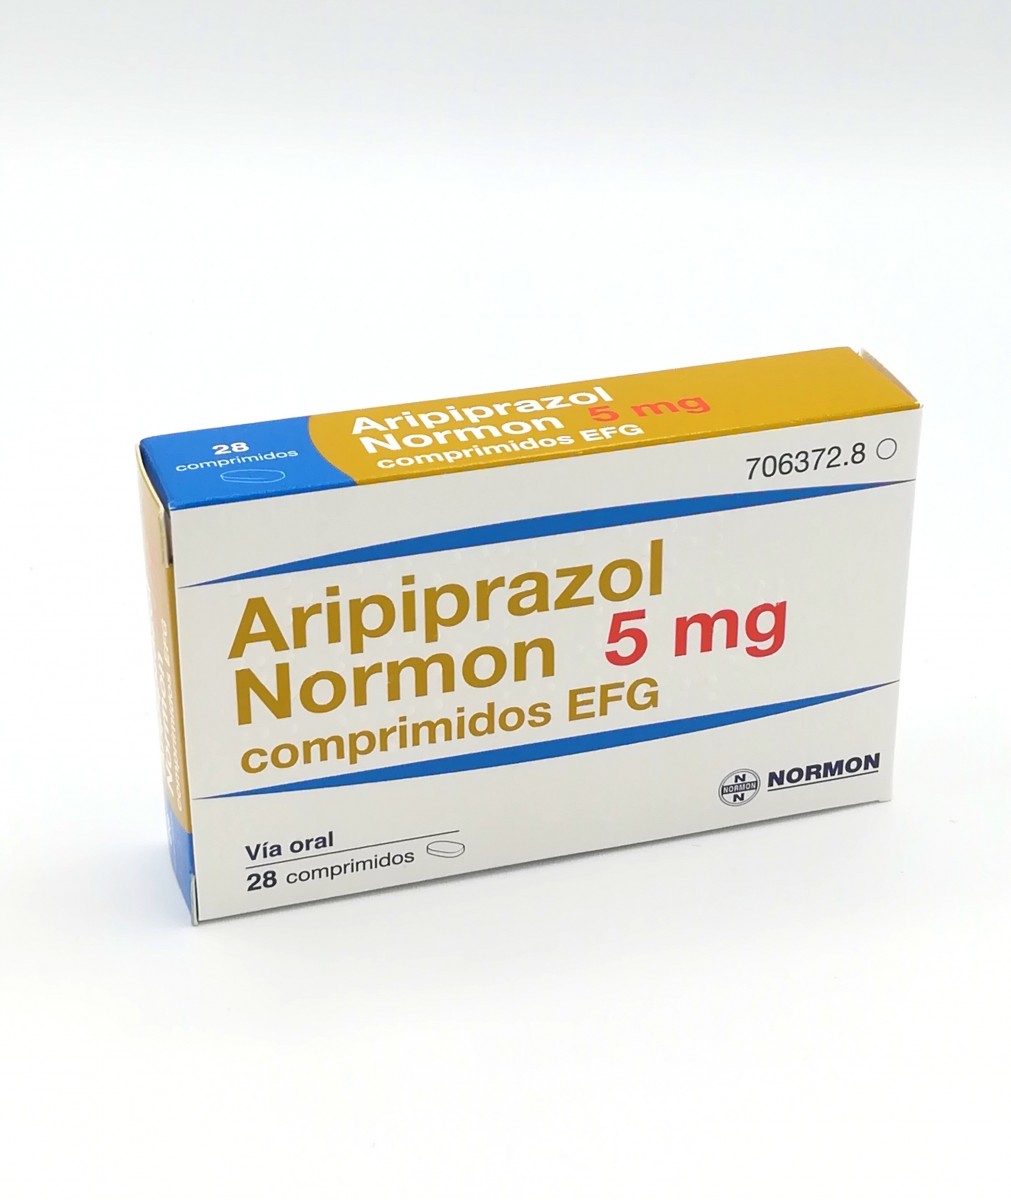 ARIPIPRAZOL NORMON 5 MG COMPRIMIDOS EFG , 28 comprimidos fotografía del envase.